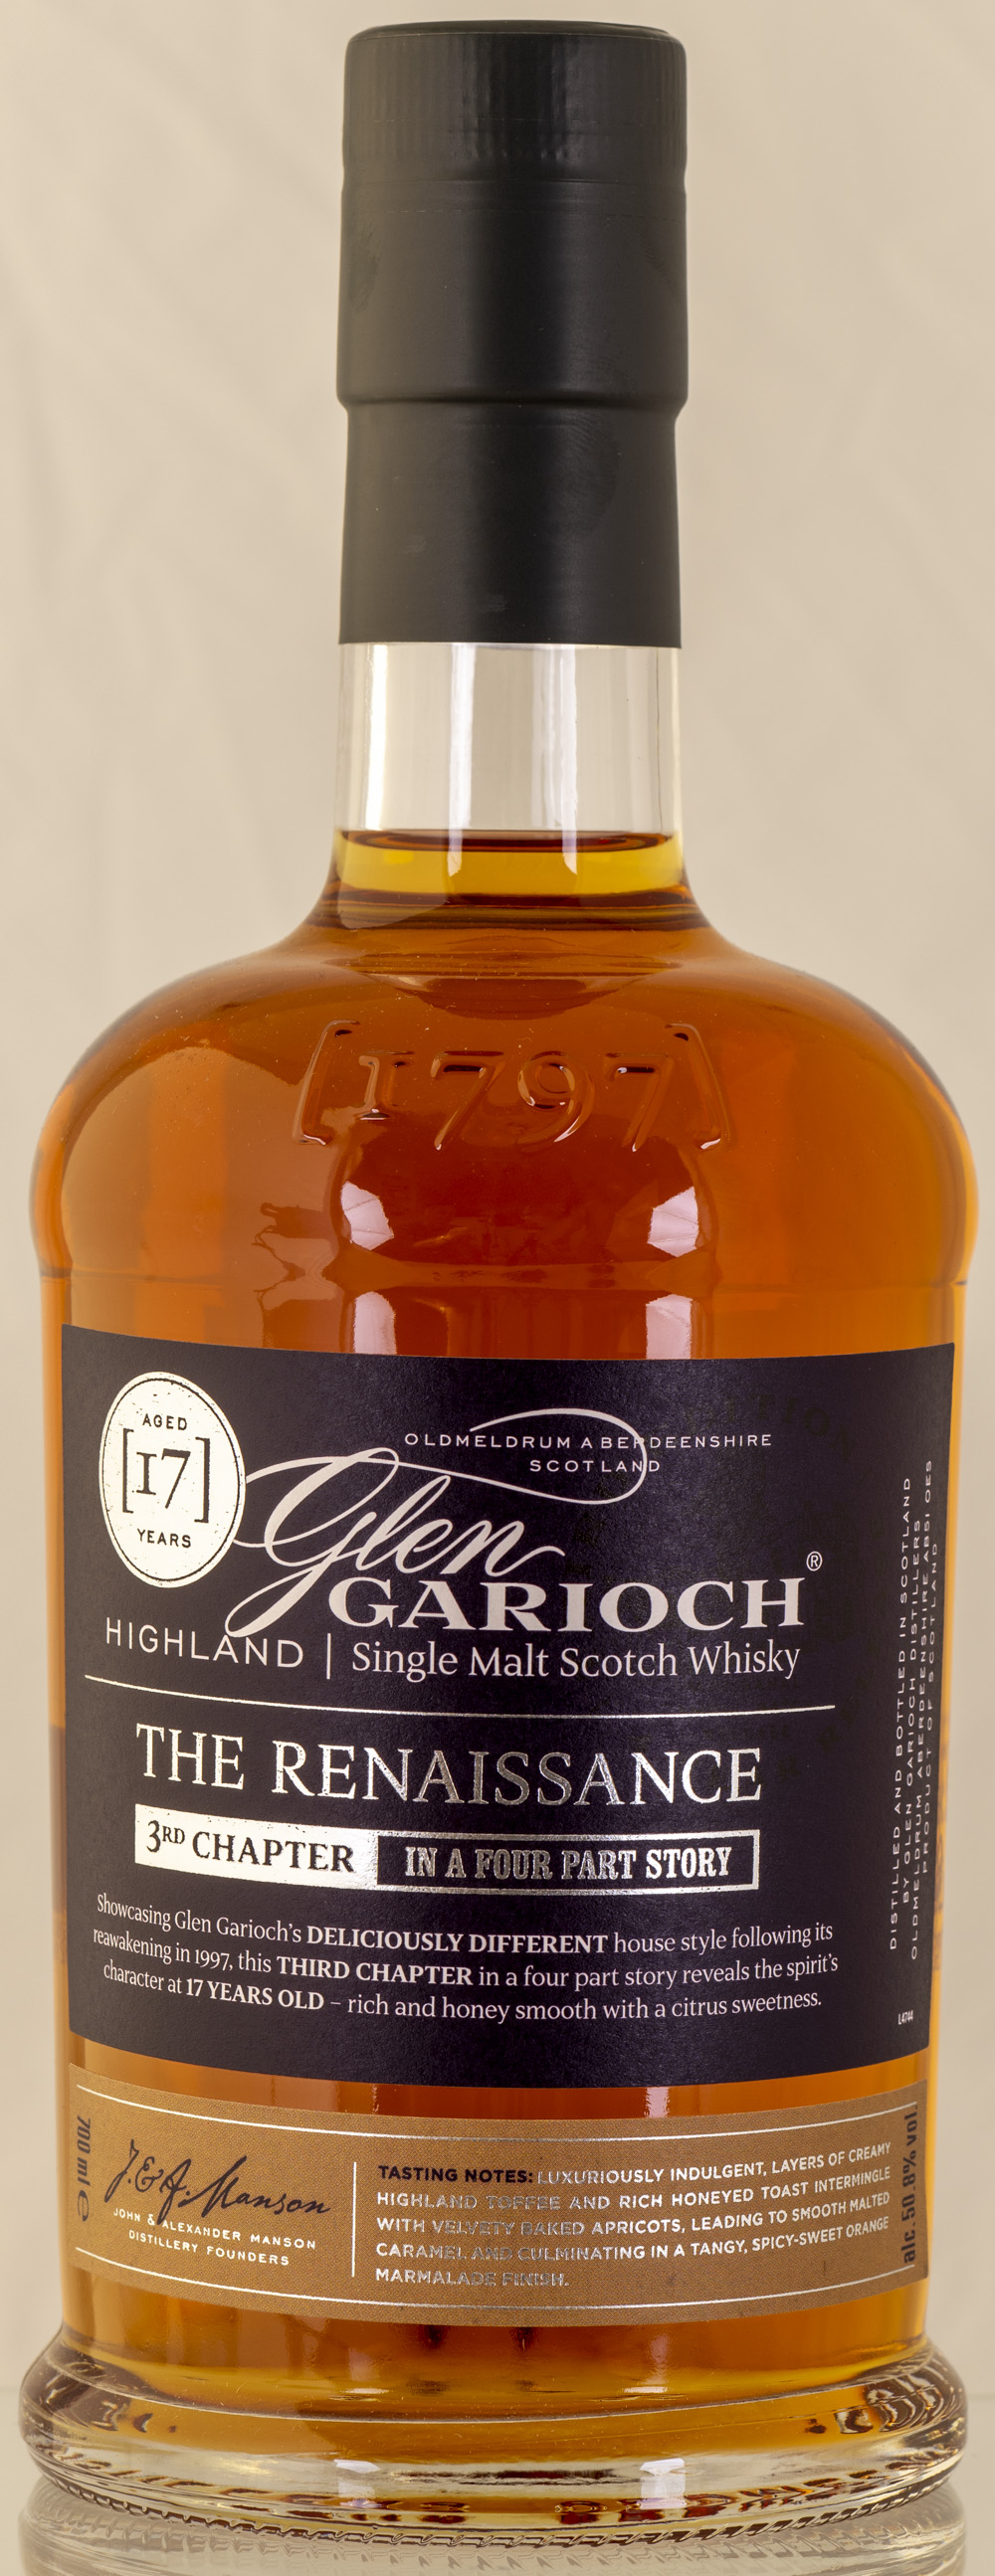 Billede: PHC_2300 - Glen Garioch The Renaissance 3rd chapter - bottle front.jpg